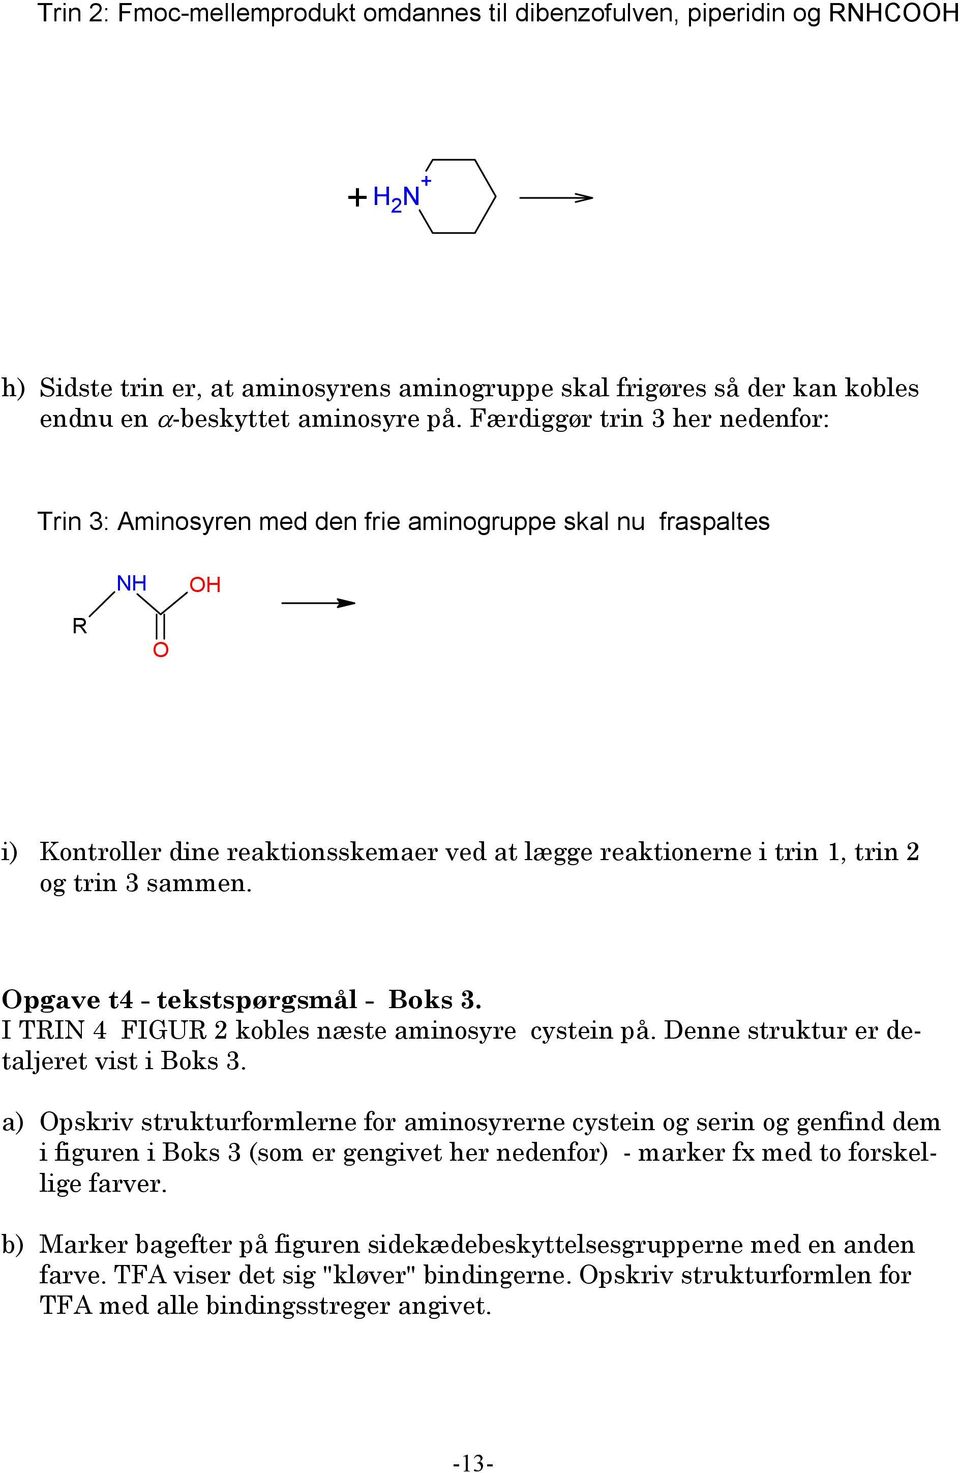 pgave t4 - tekstspørgsmål - Boks 3. I TIN 4 FIGU 2 kobles næste aminosyre cystein på. Denne struktur er detaljeret vist i Boks 3.